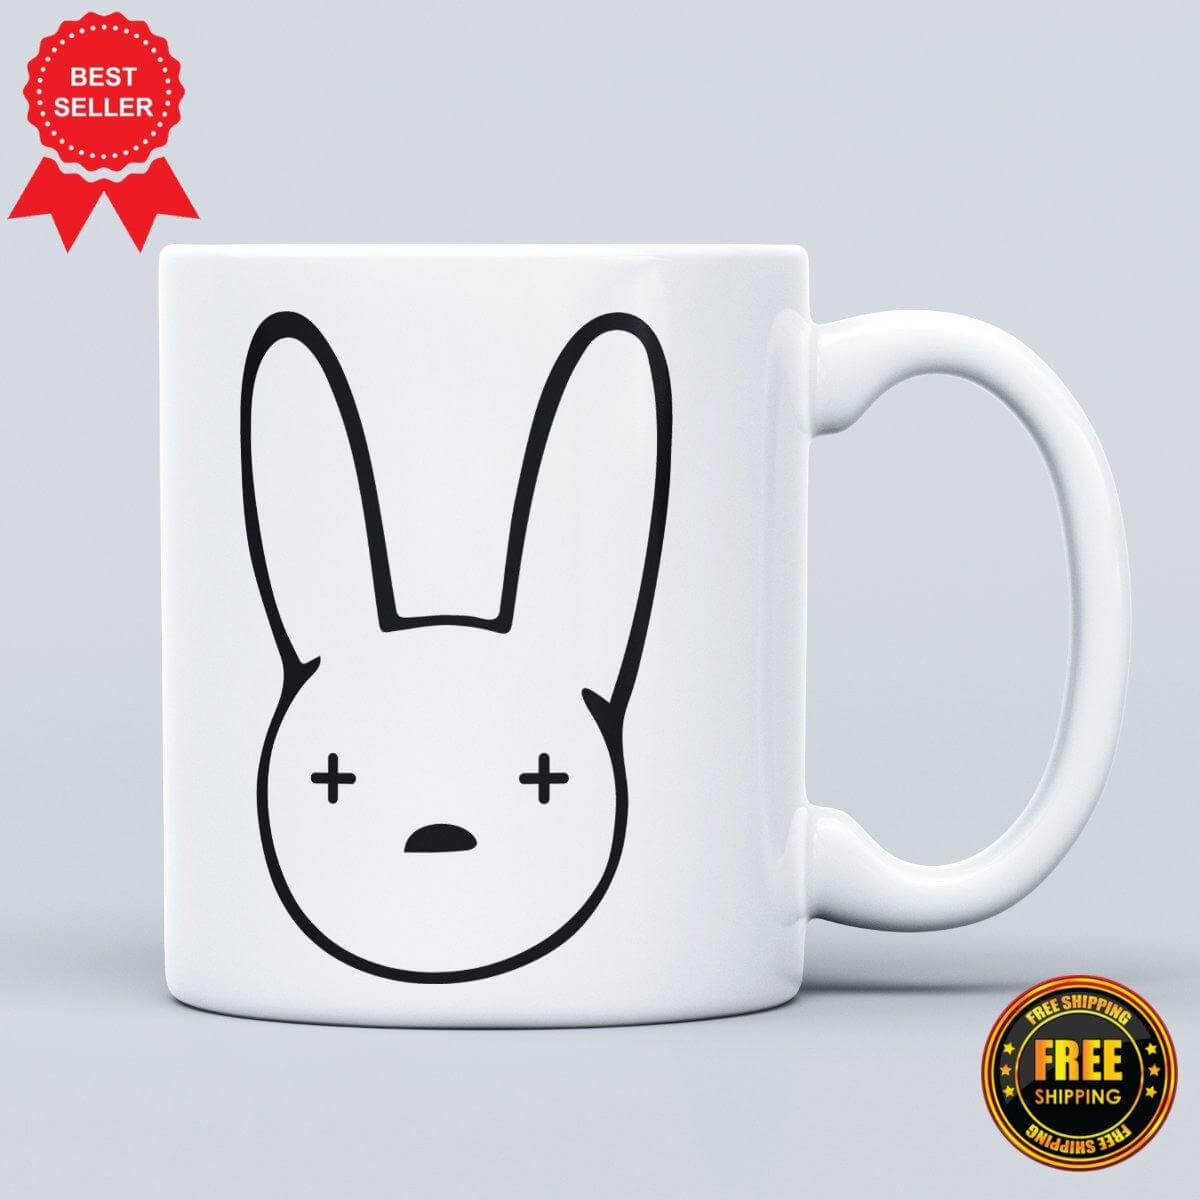 Bad Bunny Logo Printed Gift Mug - ApparelinClick